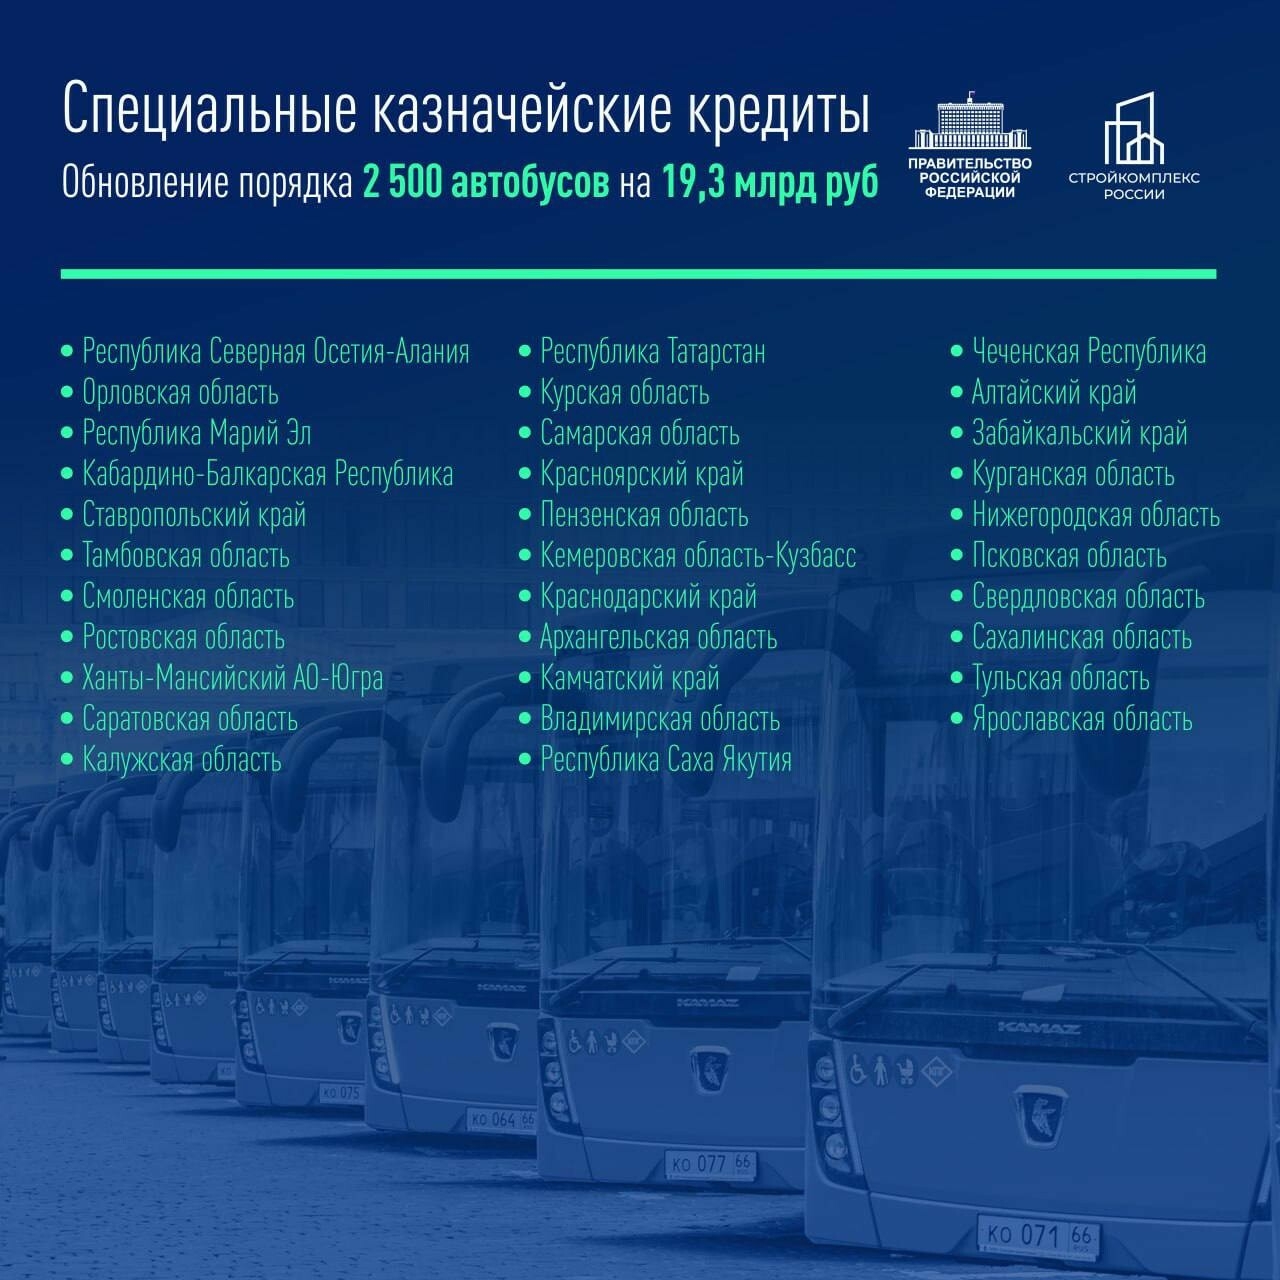 Татарстан получит новые автобусы по программе специальных казначейских кредитов